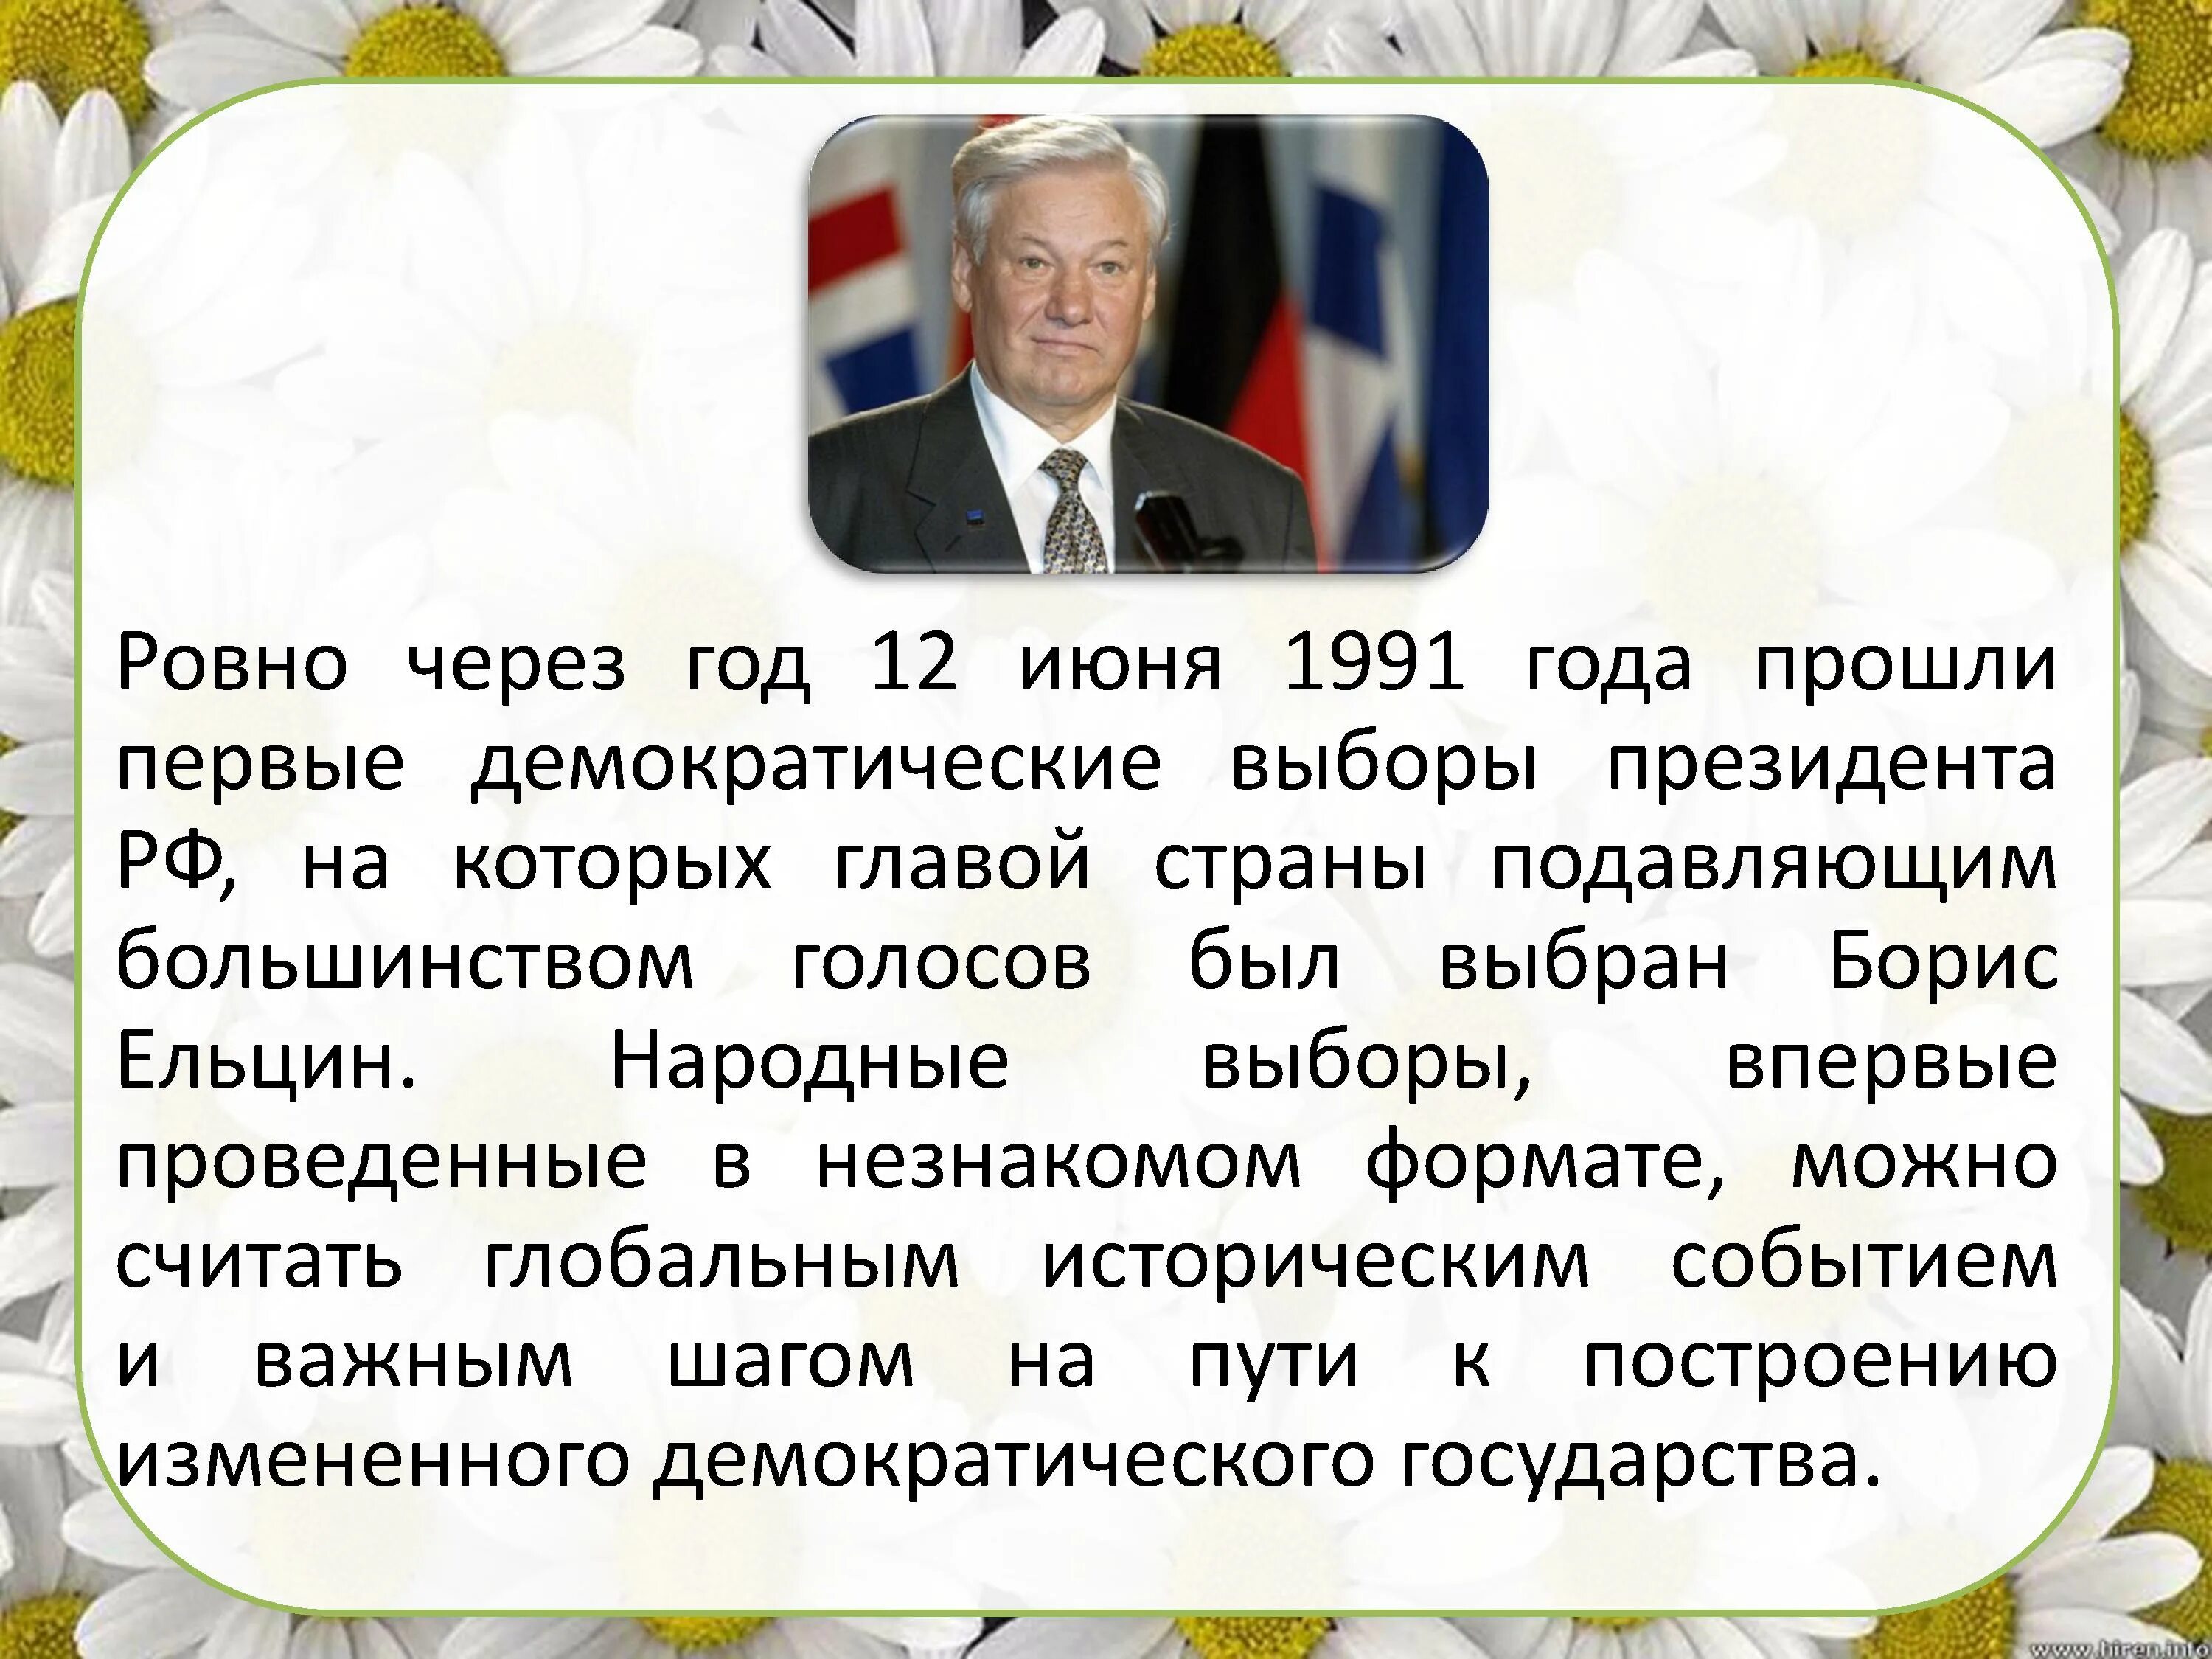 12 июня 1991 г. 12 Июня 1991 года. 12 Июня 1991 года событие. Выборы 12 июня 1991 года. 12 Июня 1991 года выборы президента России.